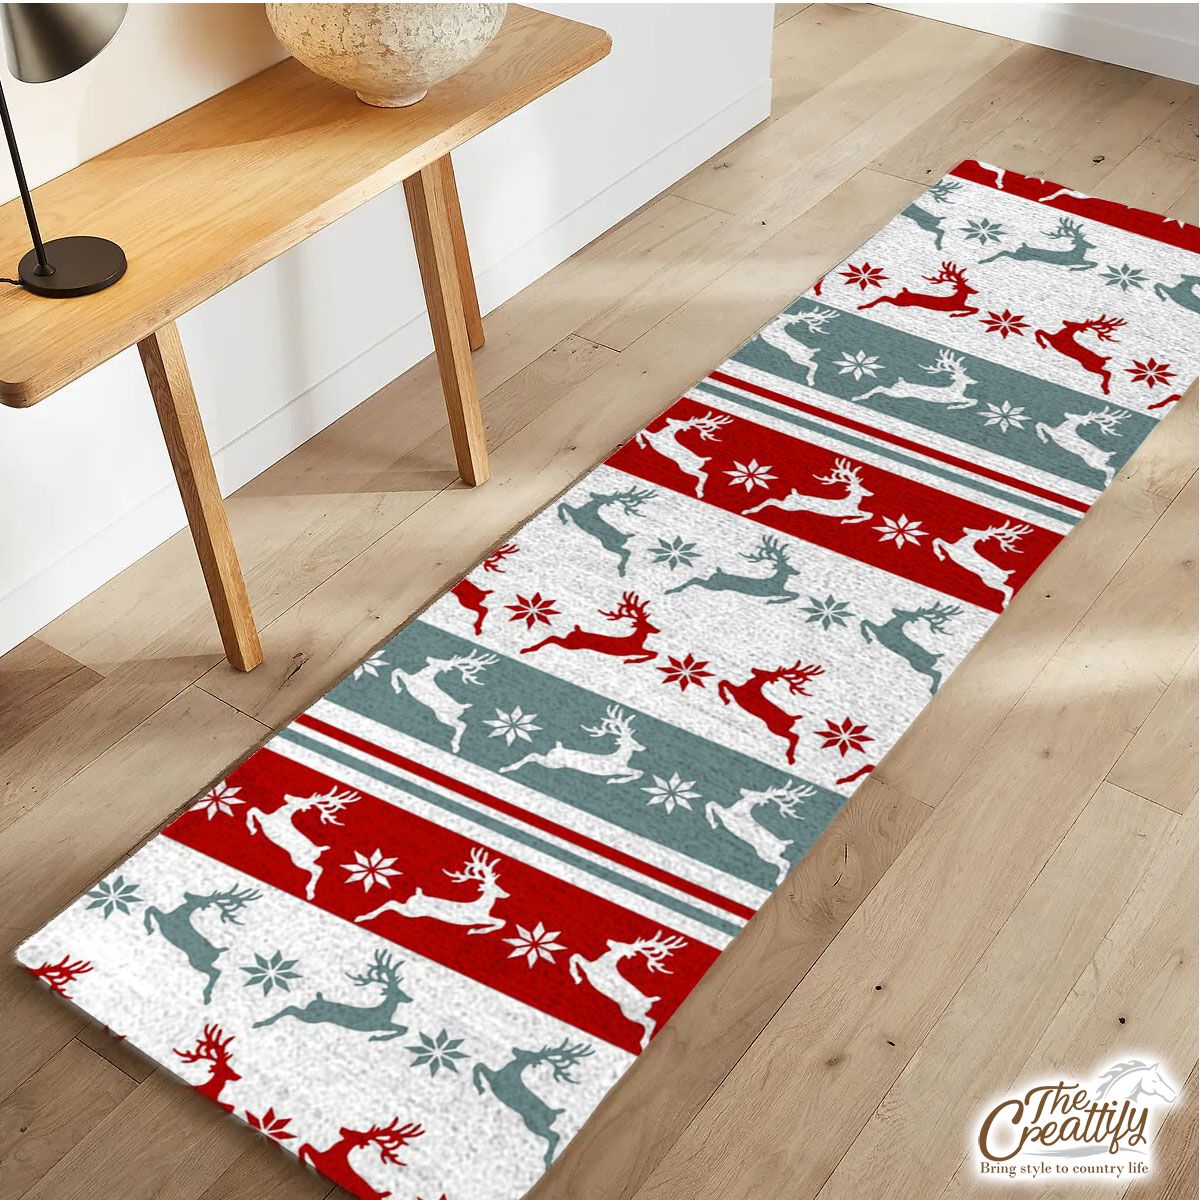 Colorful Christmas Reindeer, Snowflake Pattern Runner Carpet